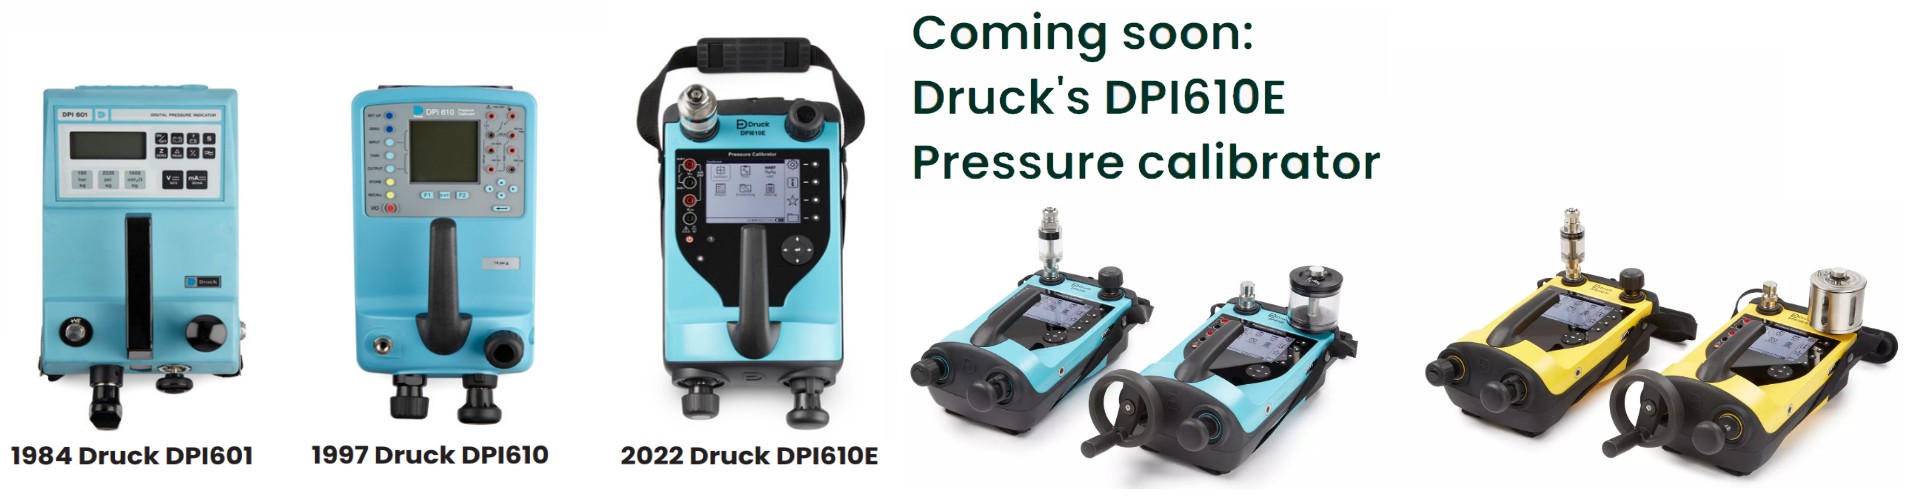 Druck DPI610E Pressure calibrator 經典壓力校正器 全新上市